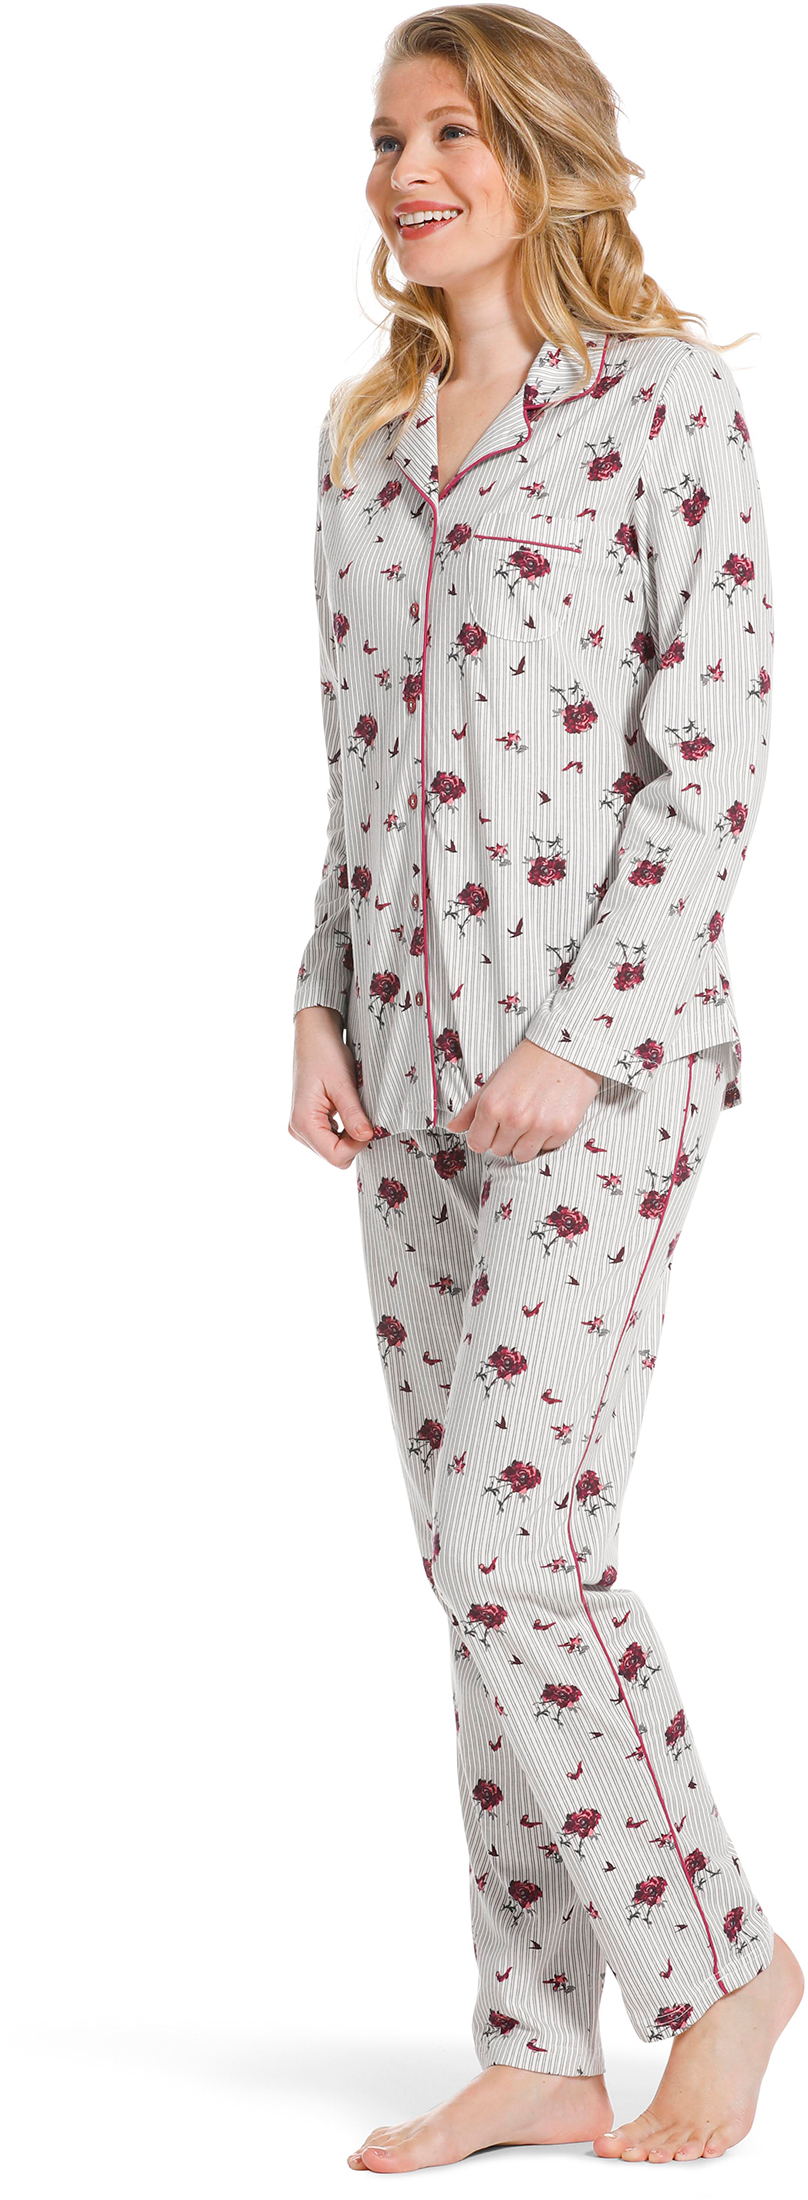 Pastunette doorknoop dames pyjama 20222 156 6 44